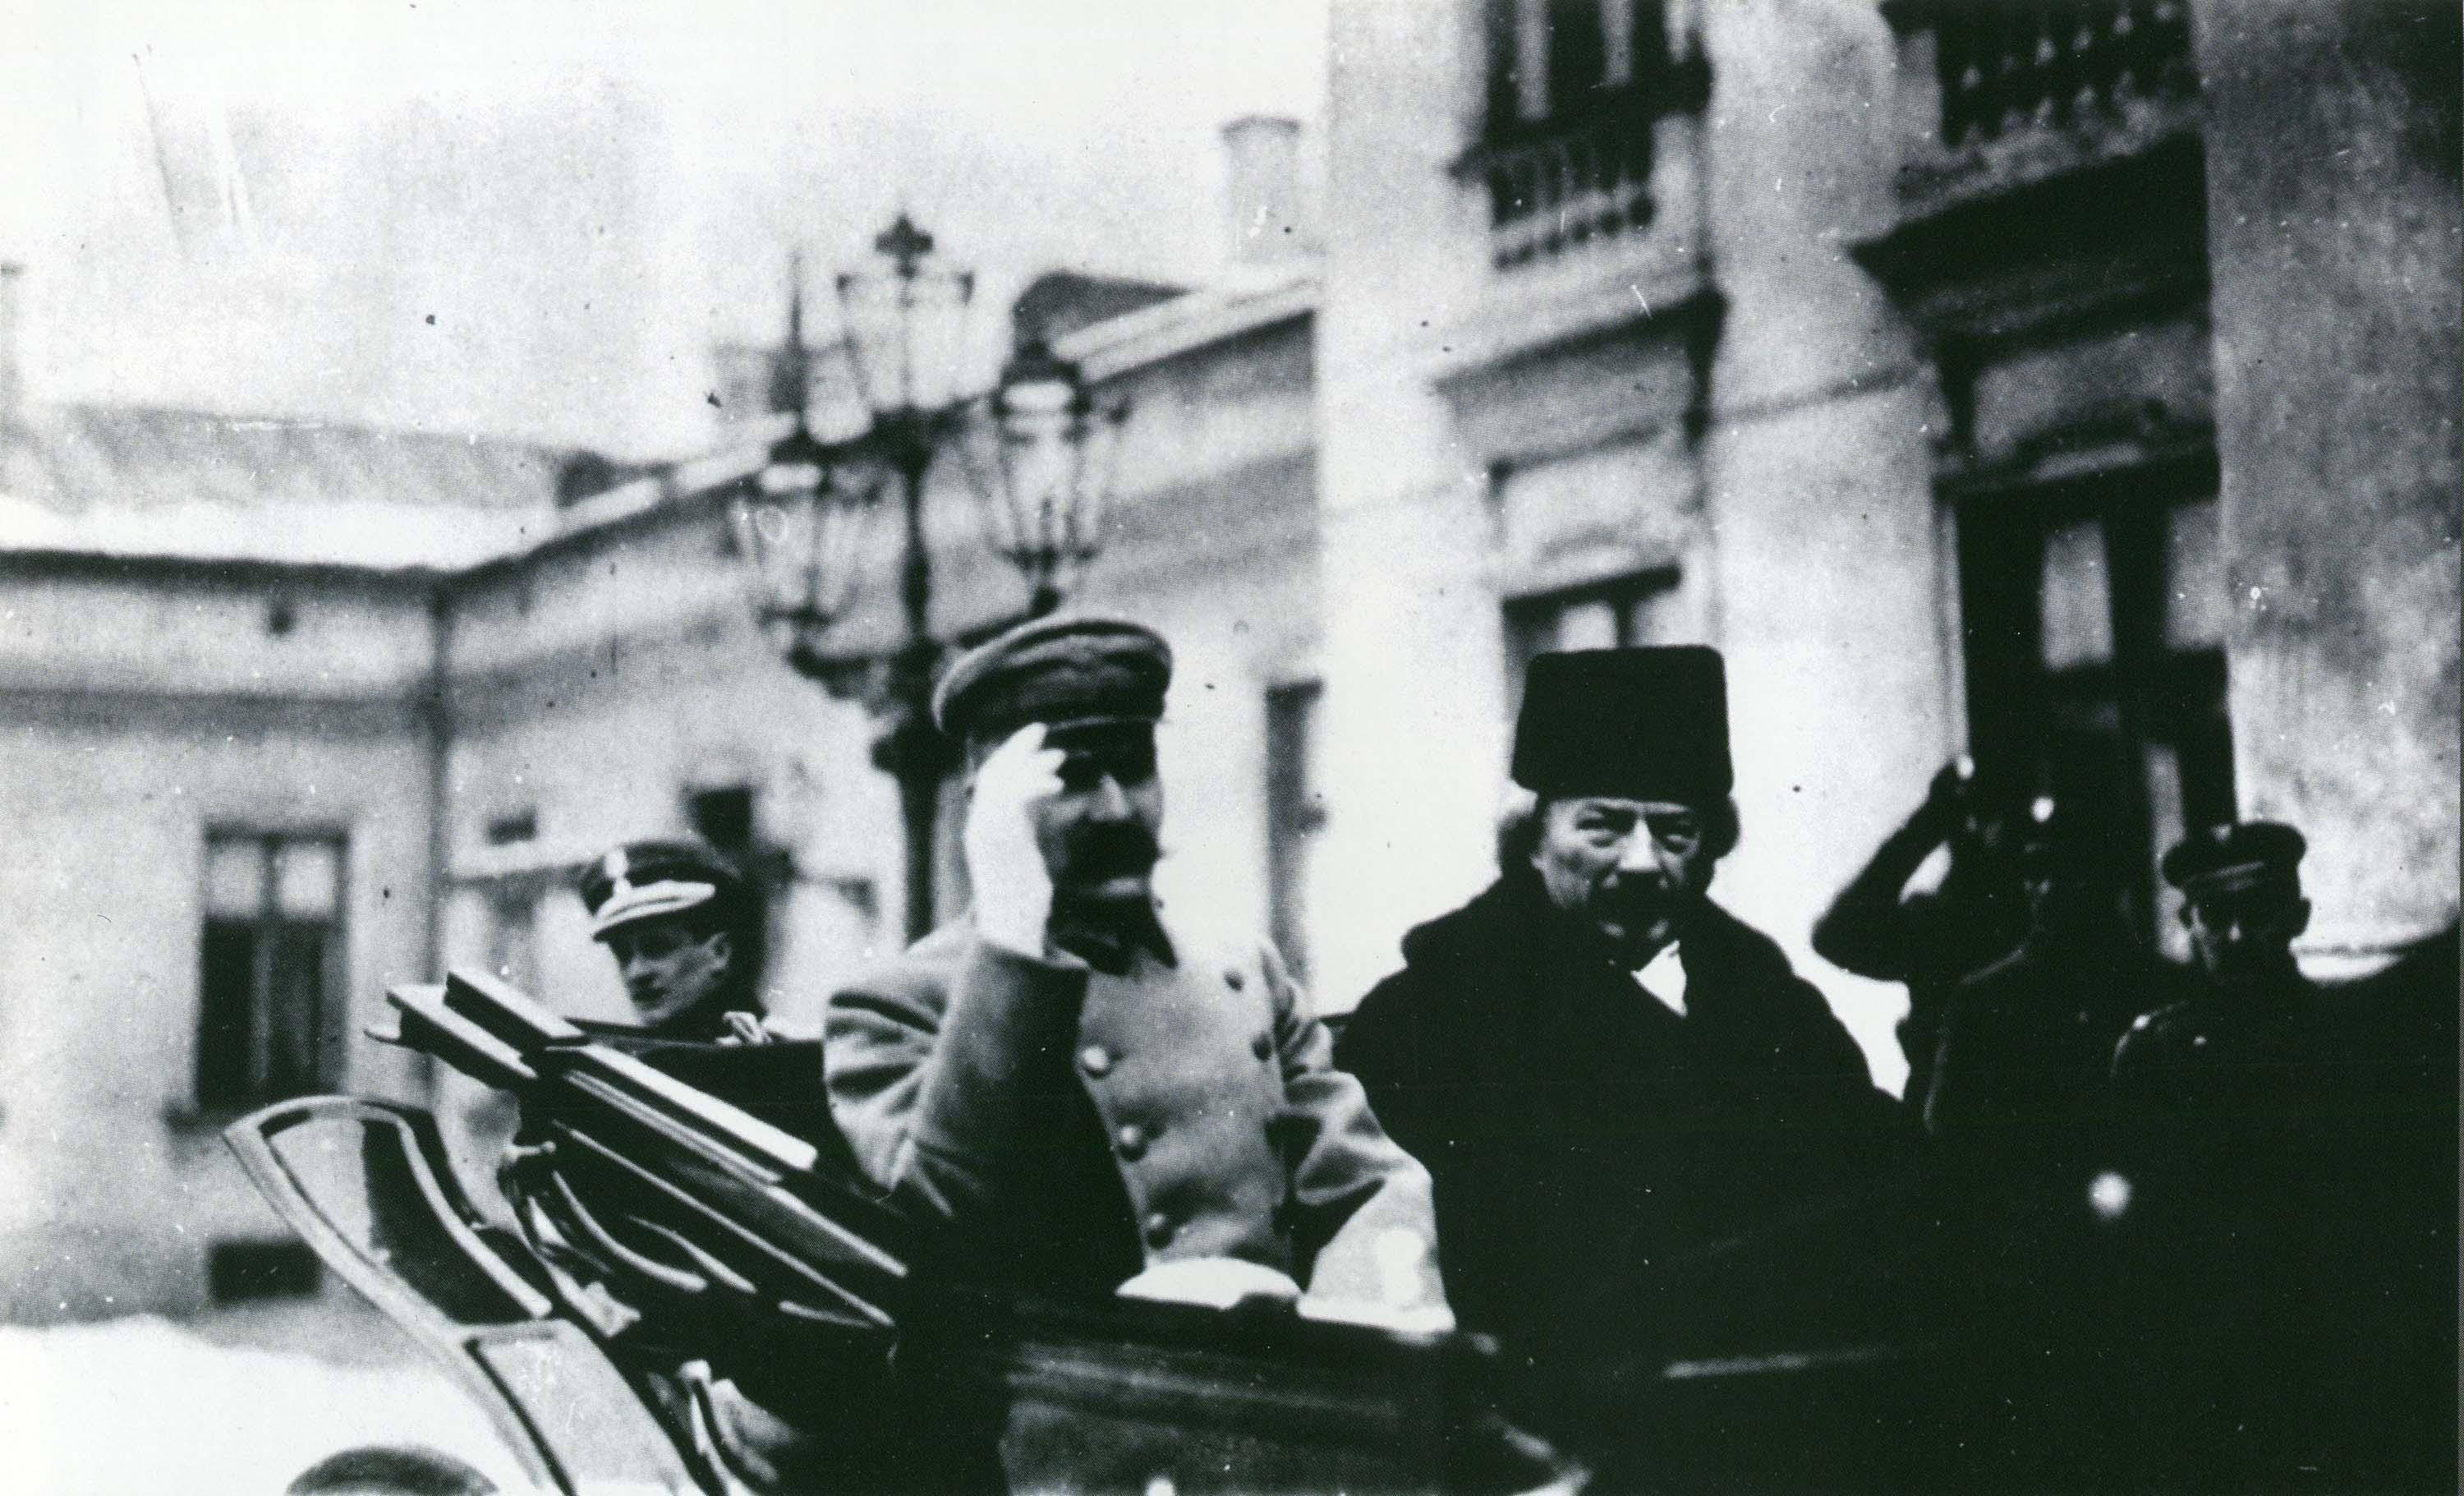 Paderewski en voiture dans les rues de Varsovie le 10 février 1919 en compagnie du général Jósef Piłsudski, chef de l'Etat. [Muzeum Narodowe / Musée National, Varsovie]